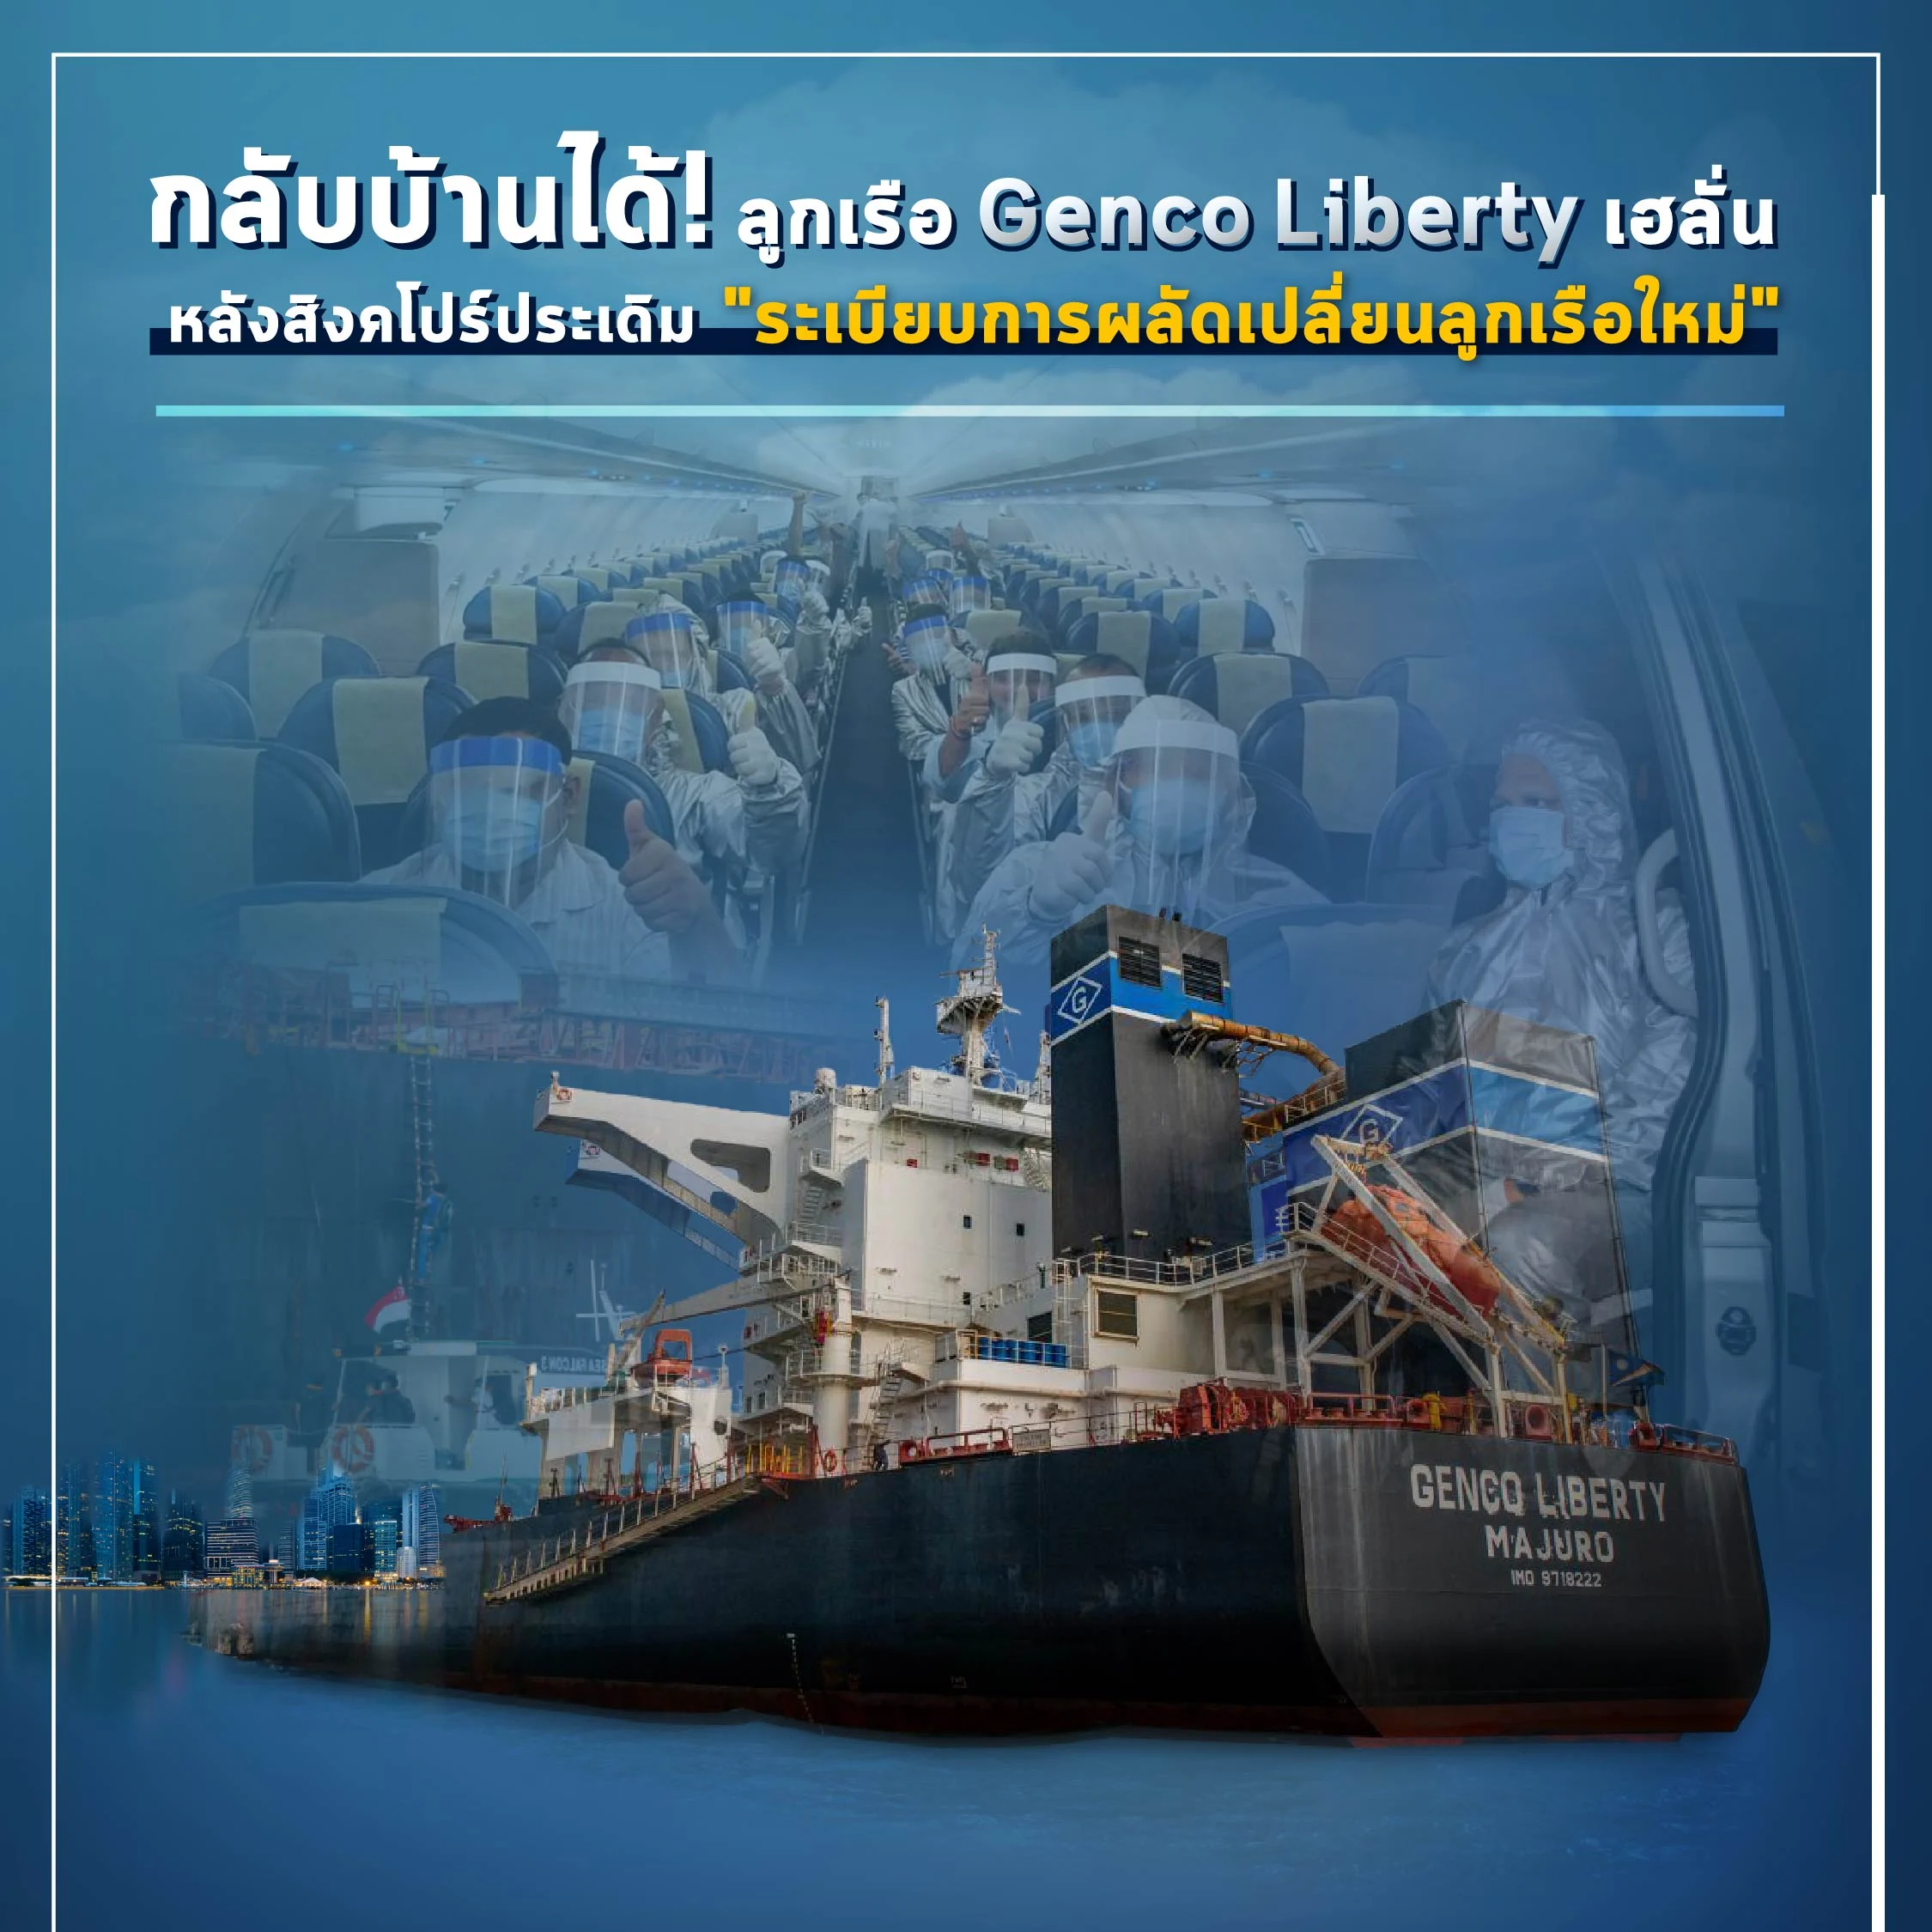 ลูกเรือ Genco Liberty ประเดิม ‘ระเบียบการผลัดเปลี่ยนลูกเรือใหม่’